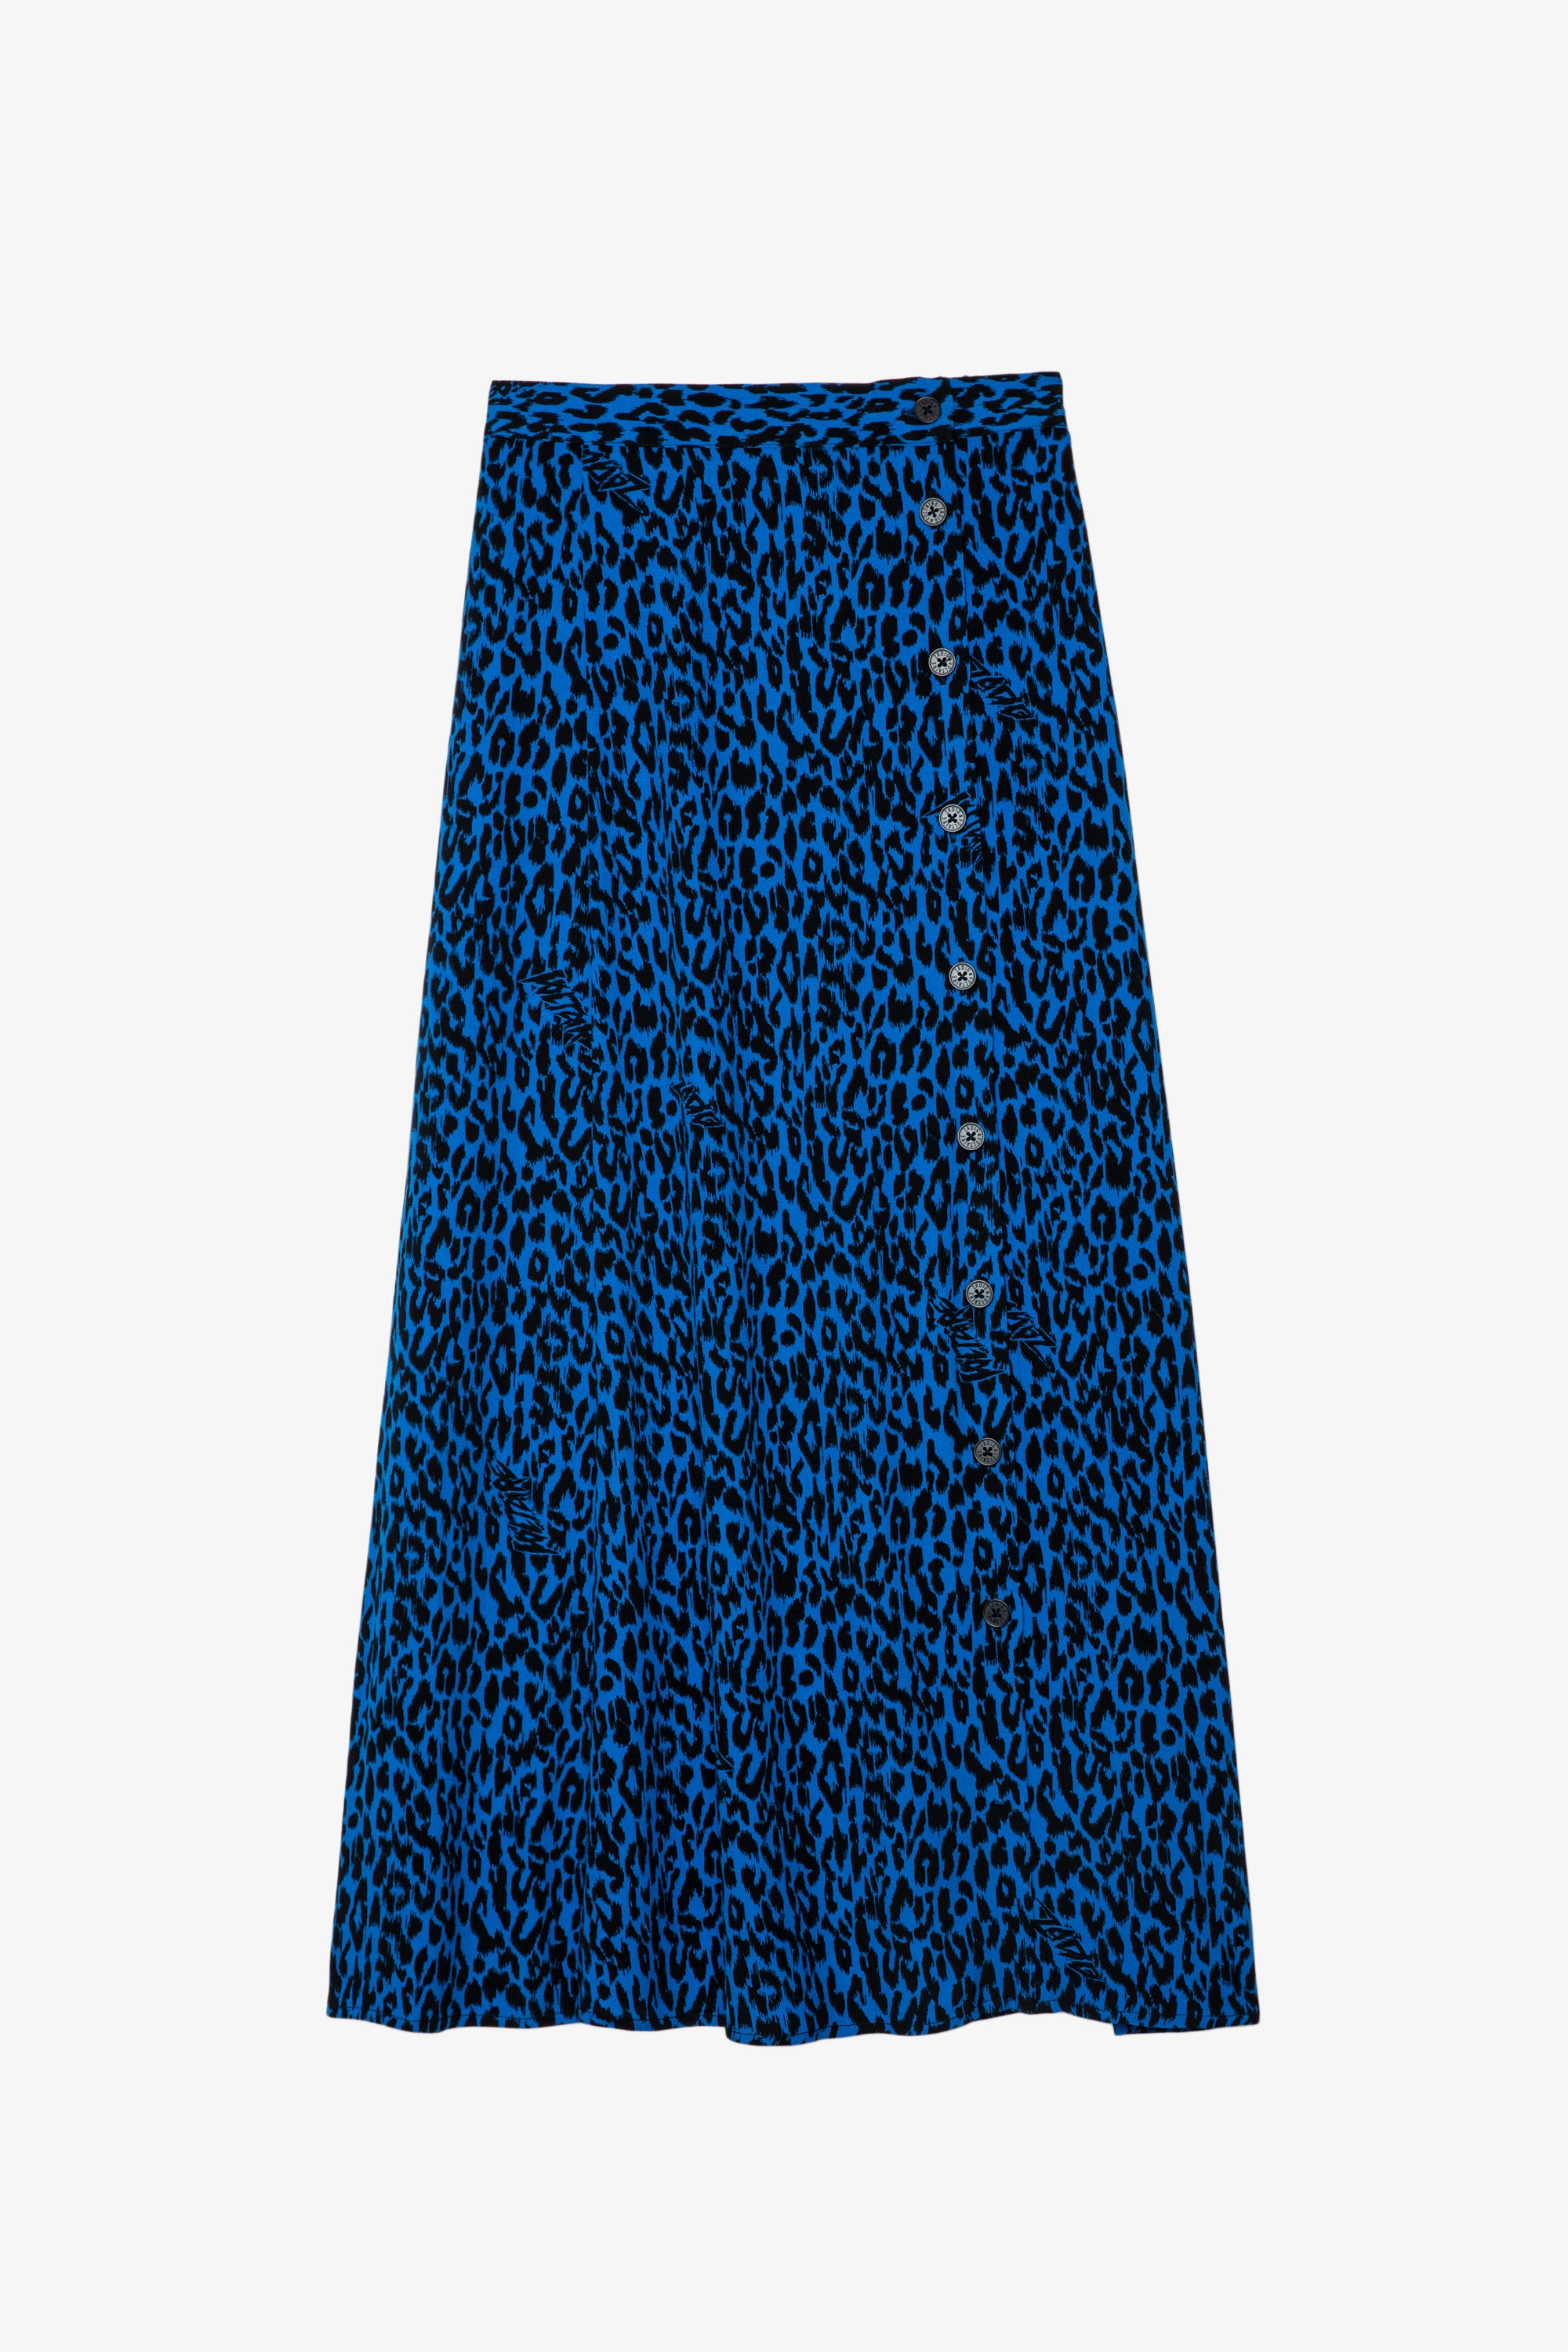 Falda June Falda larga azul con estampado de leopardo para mujer